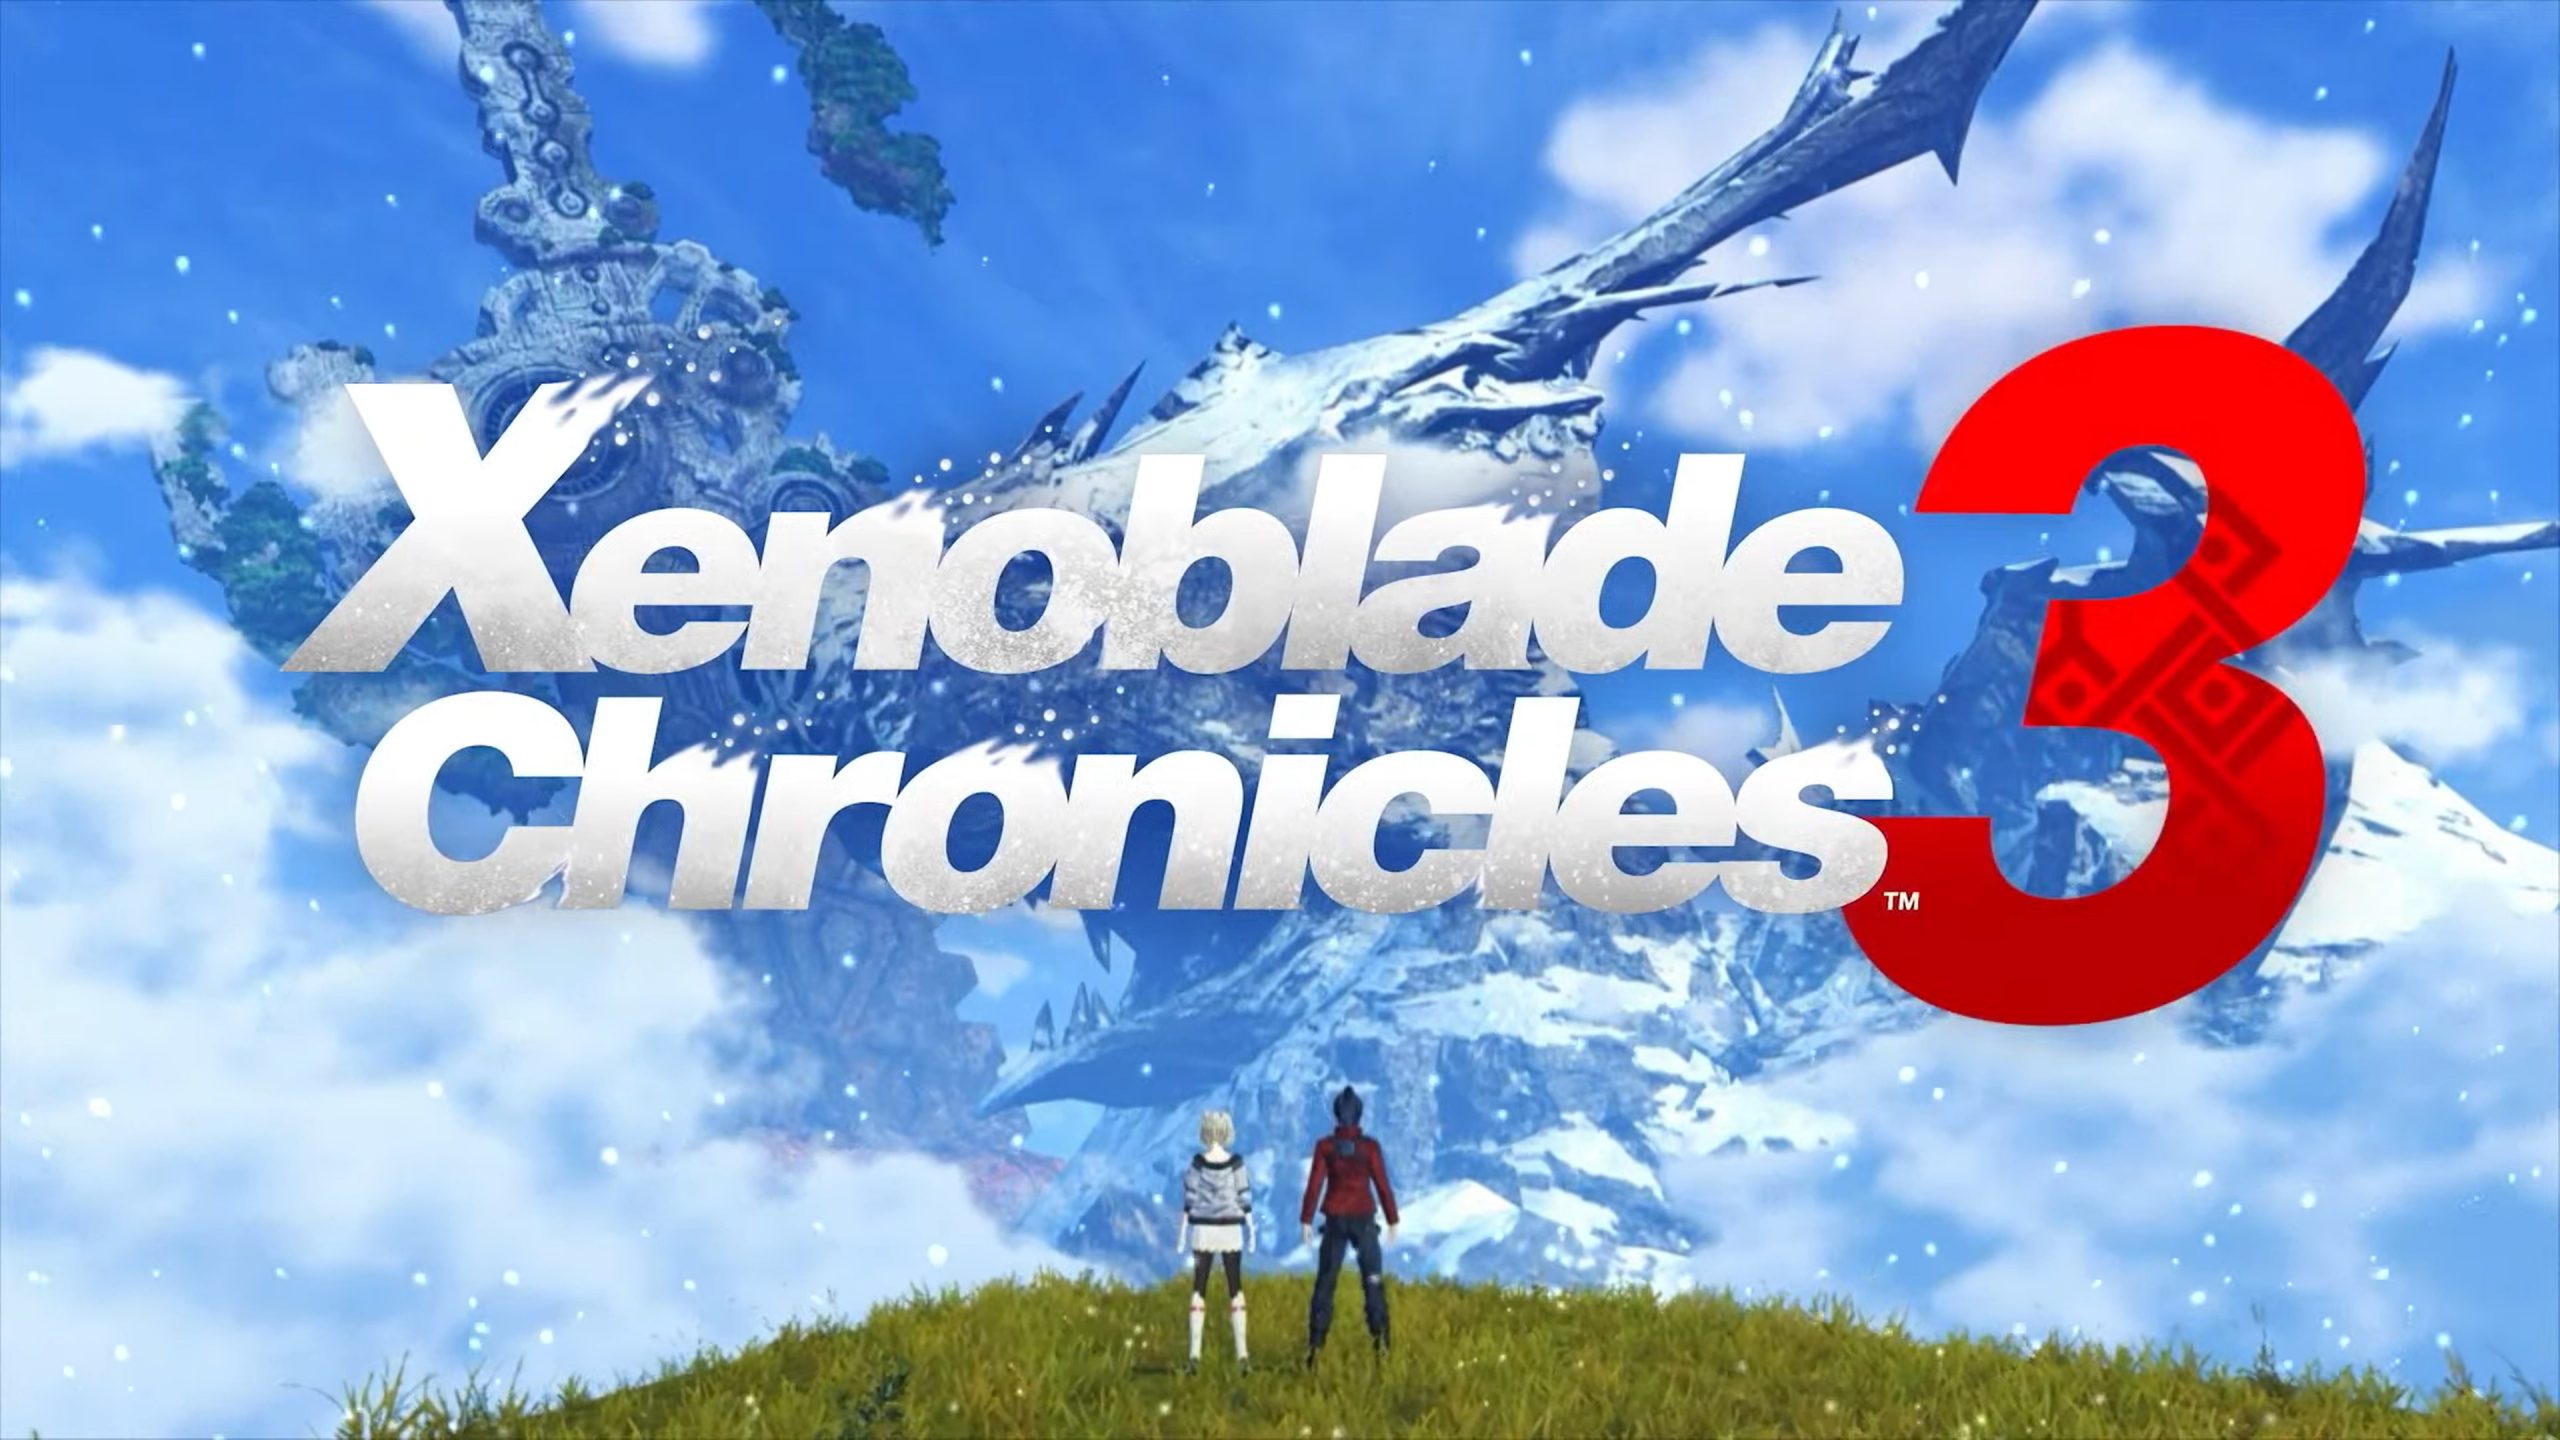 Nintendo heeft Xenoblade Chronicles 3 aangekondigd en verschijnt in september al!